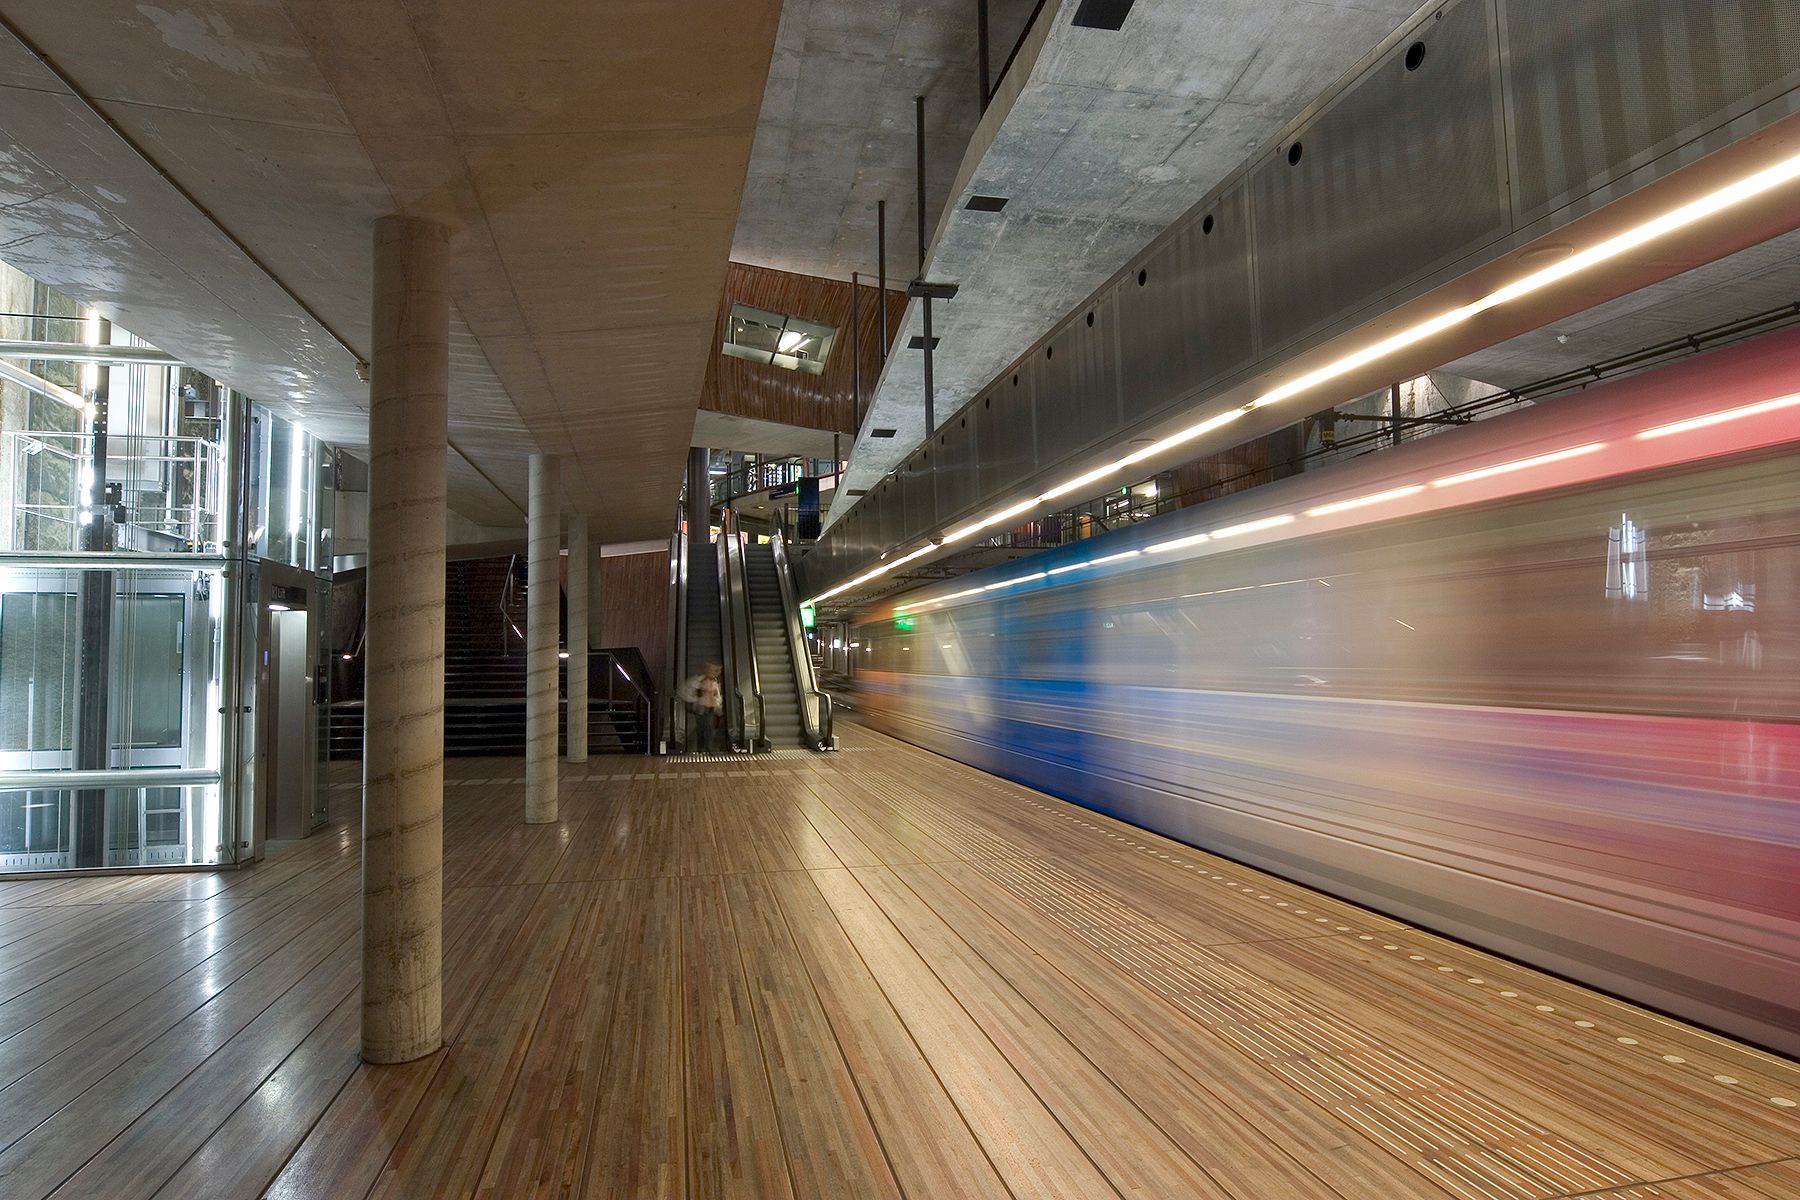 Spui souterrain, The Hague – OMA, Rem Koolhaas